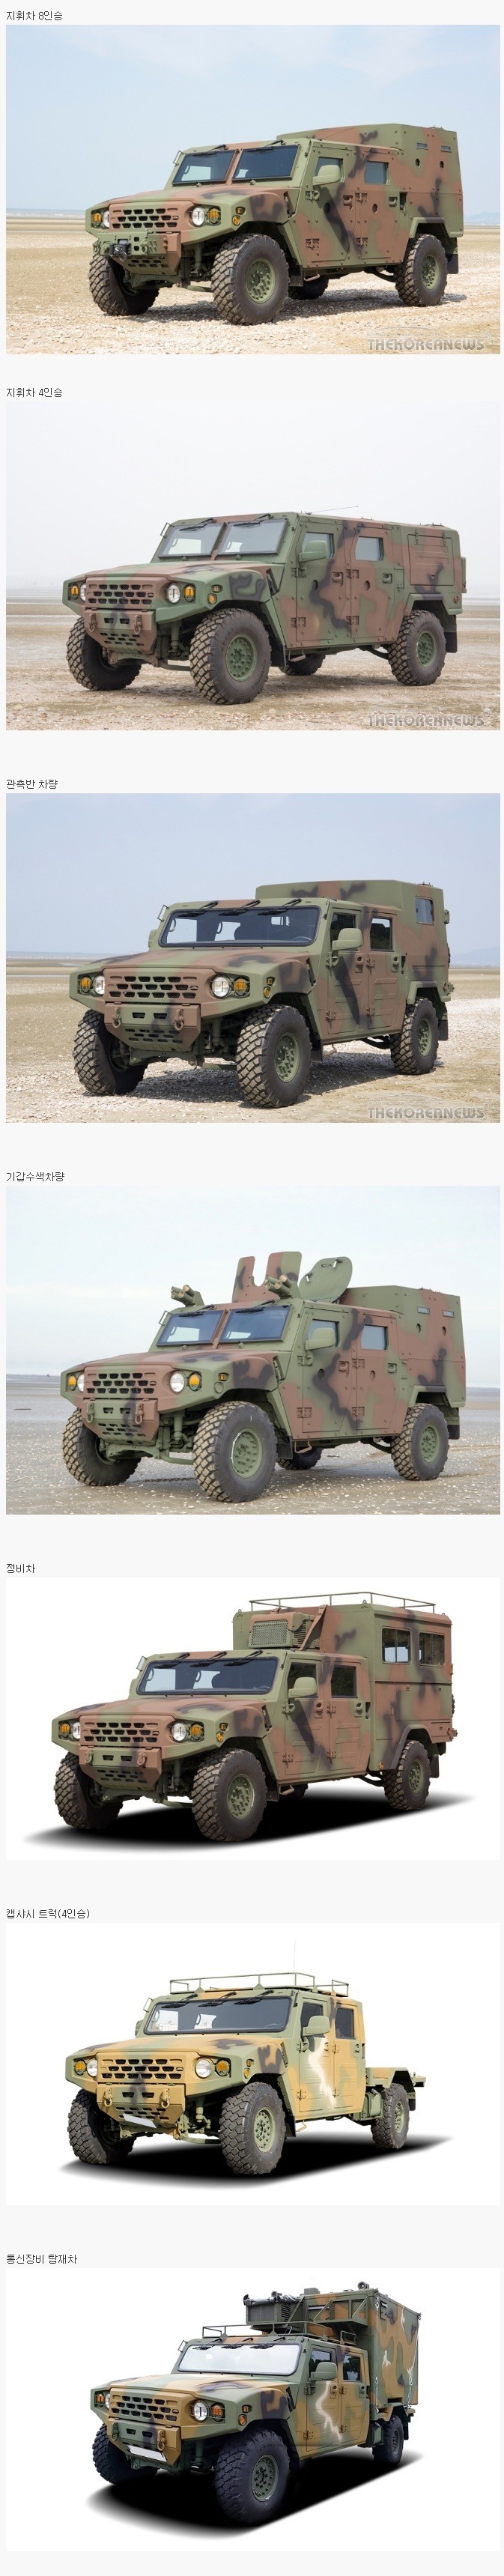 내년부터 배치되는 한국군 소형 전술차량